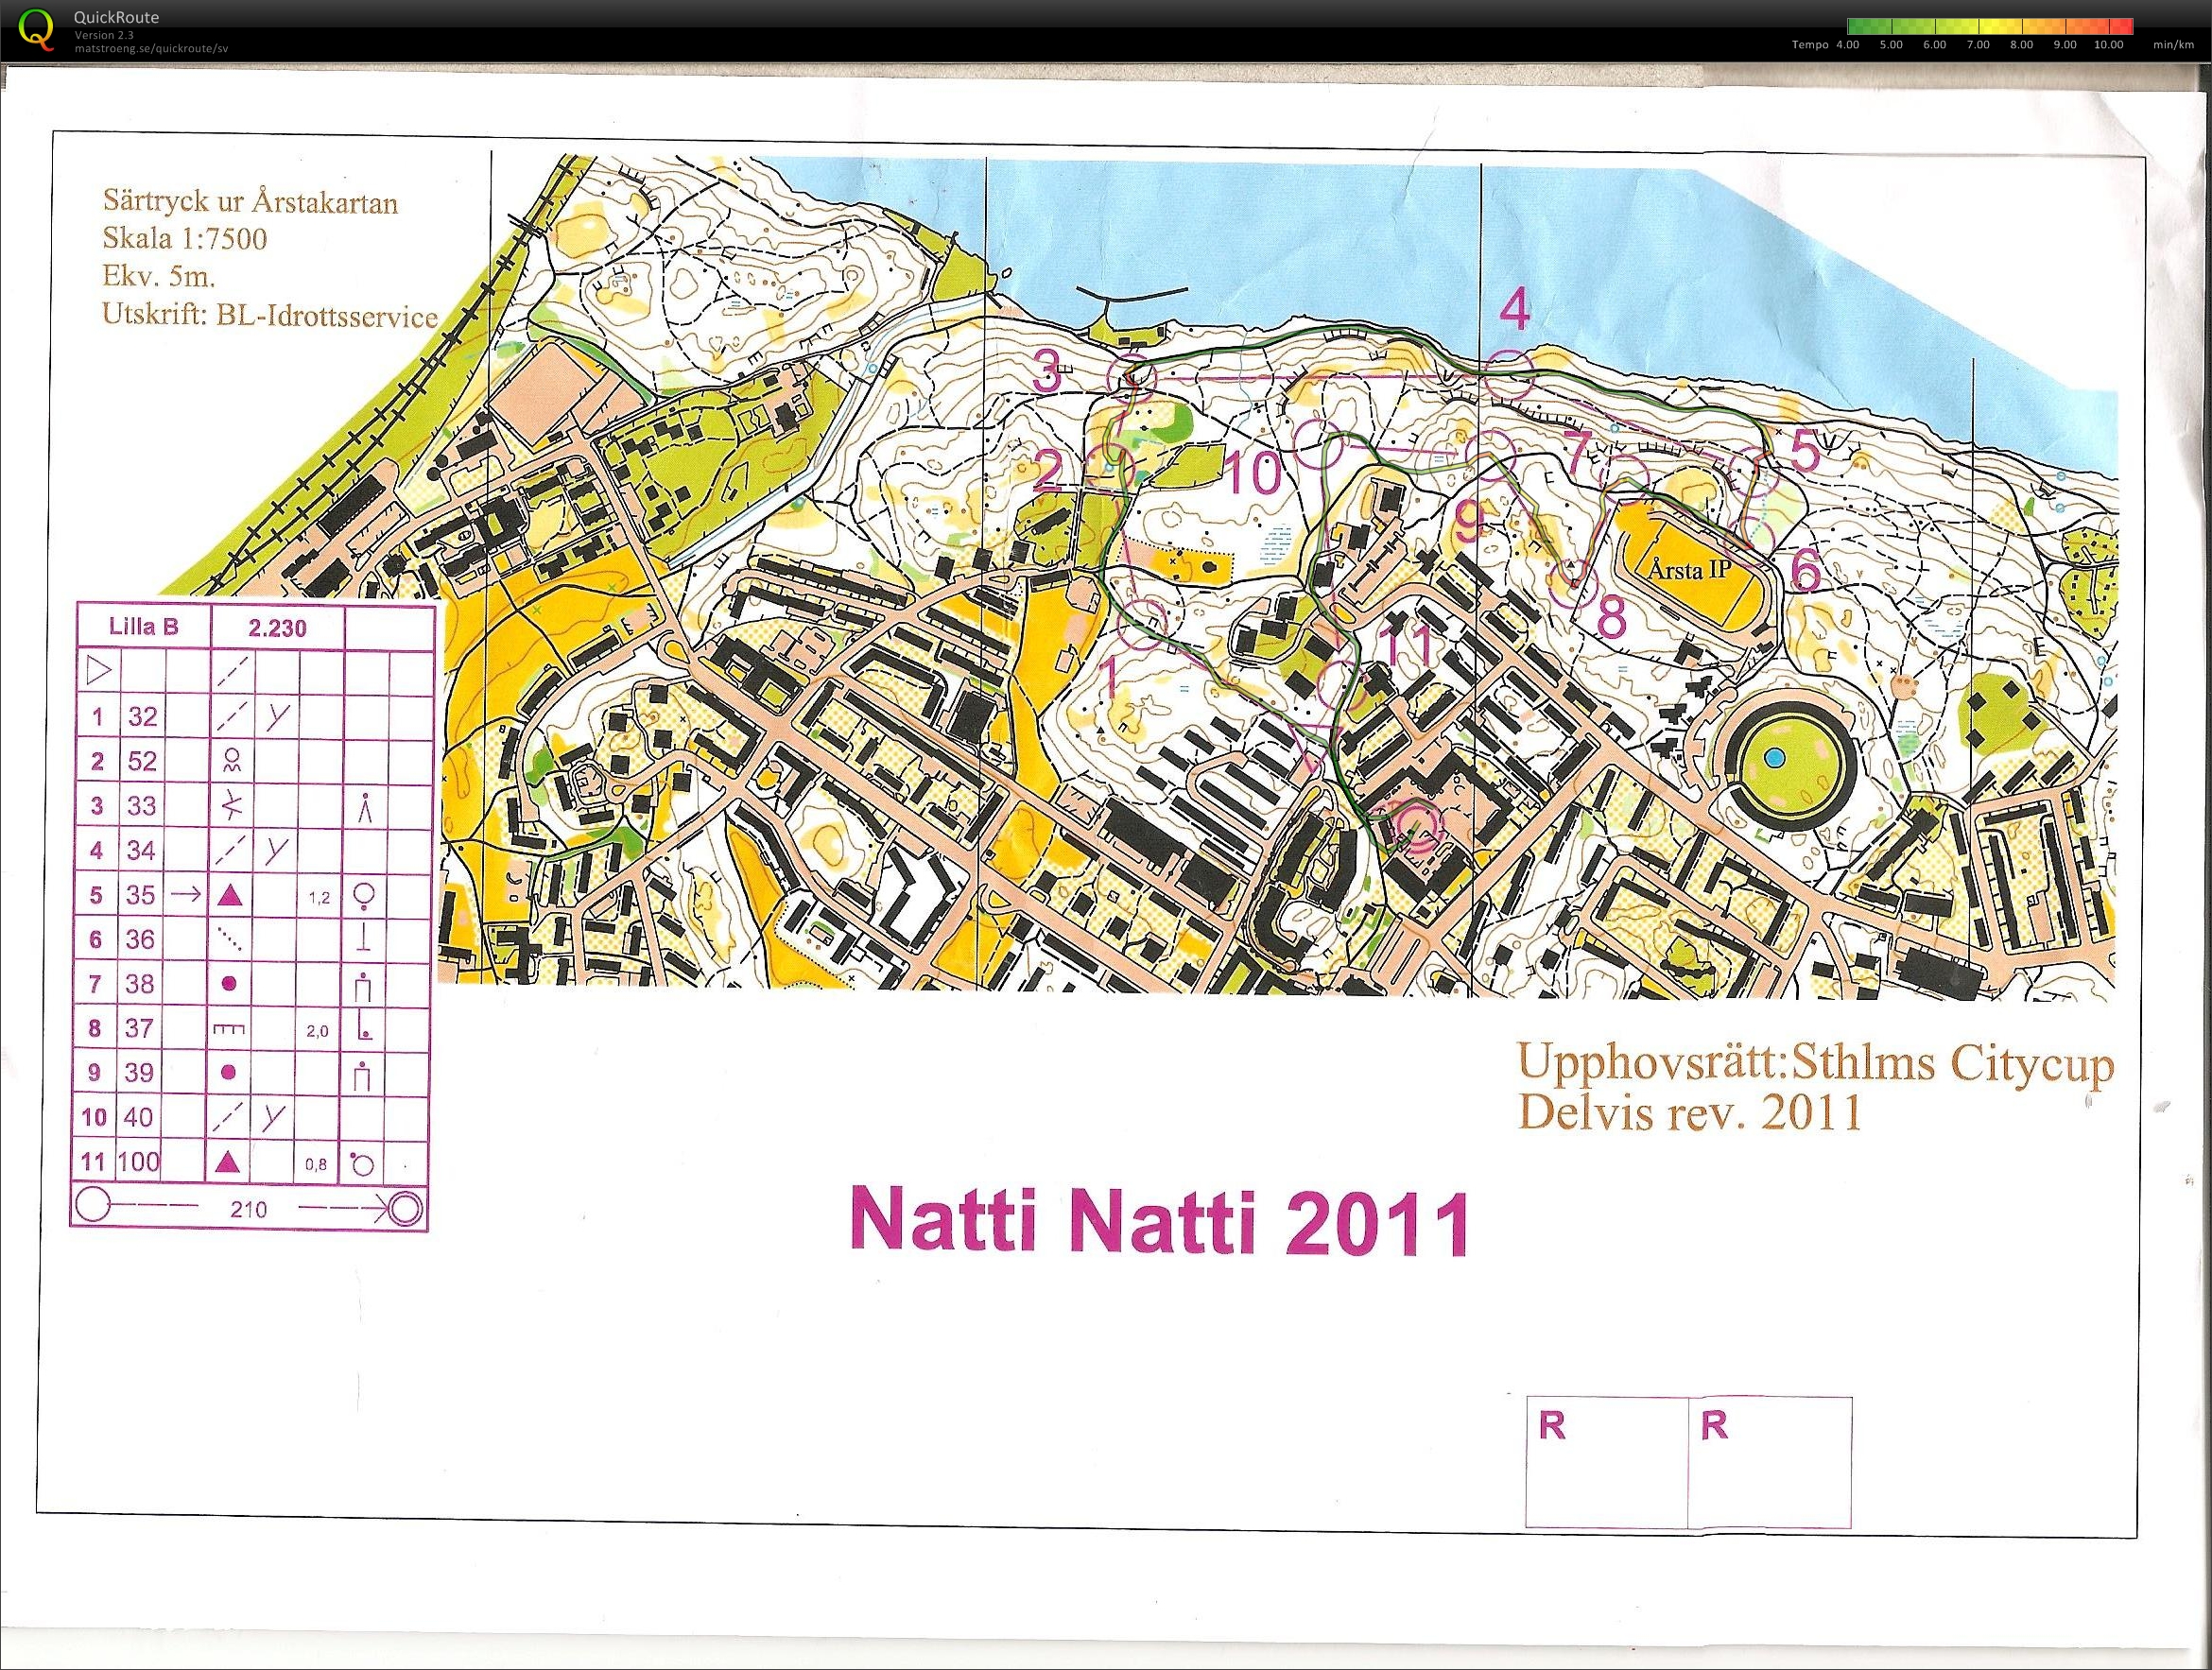 Natti-natti (2011-09-28)